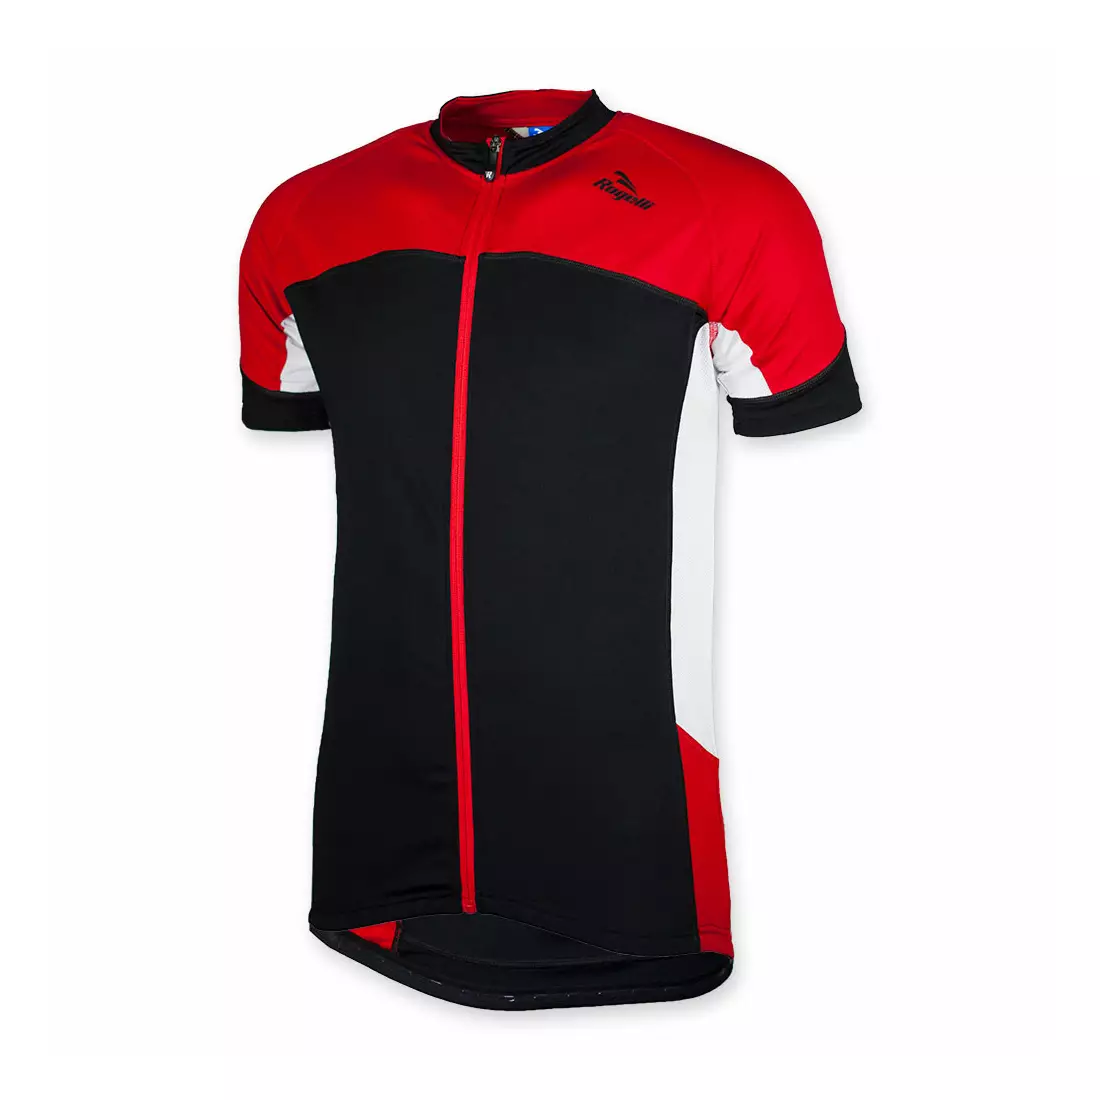 ROGELLI RECCO pánský cyklistický dres, černo-červený